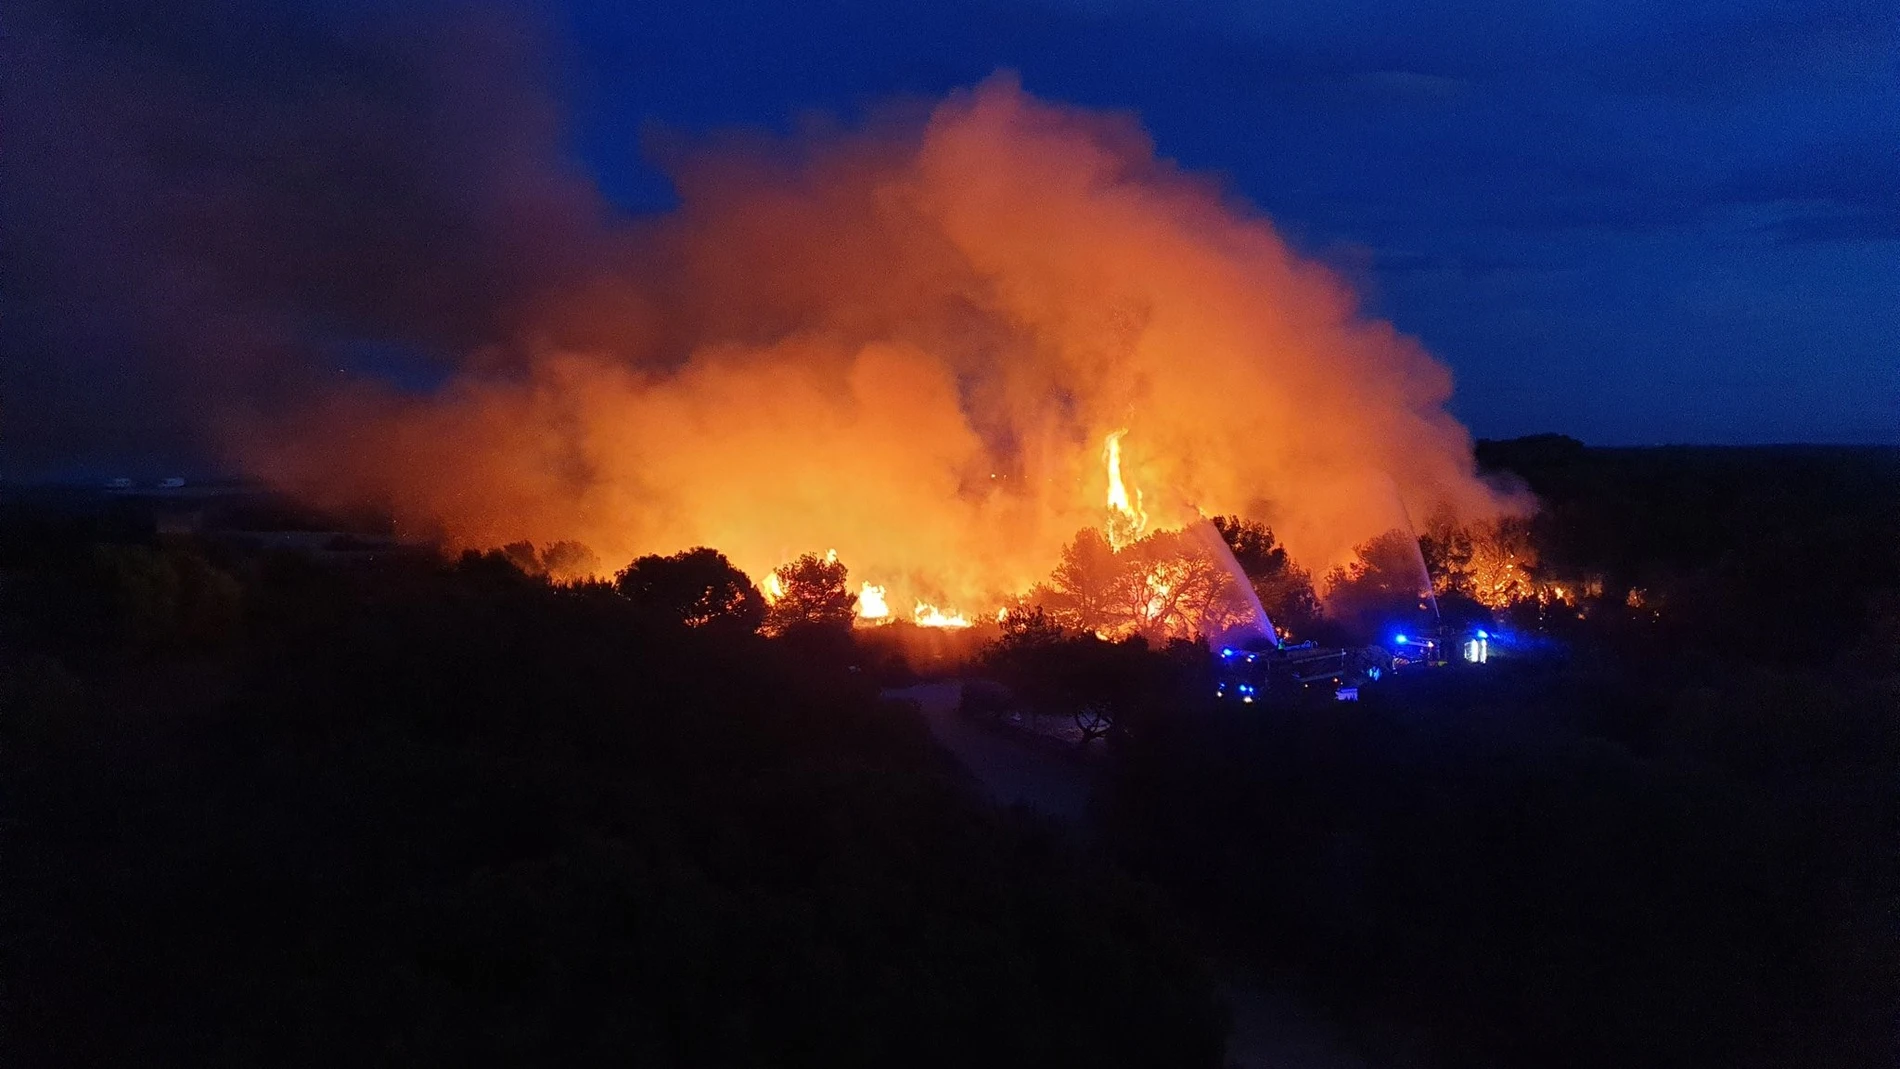 Espectacular incendio en el paraje de la Devesa de El Saler (Valencia)